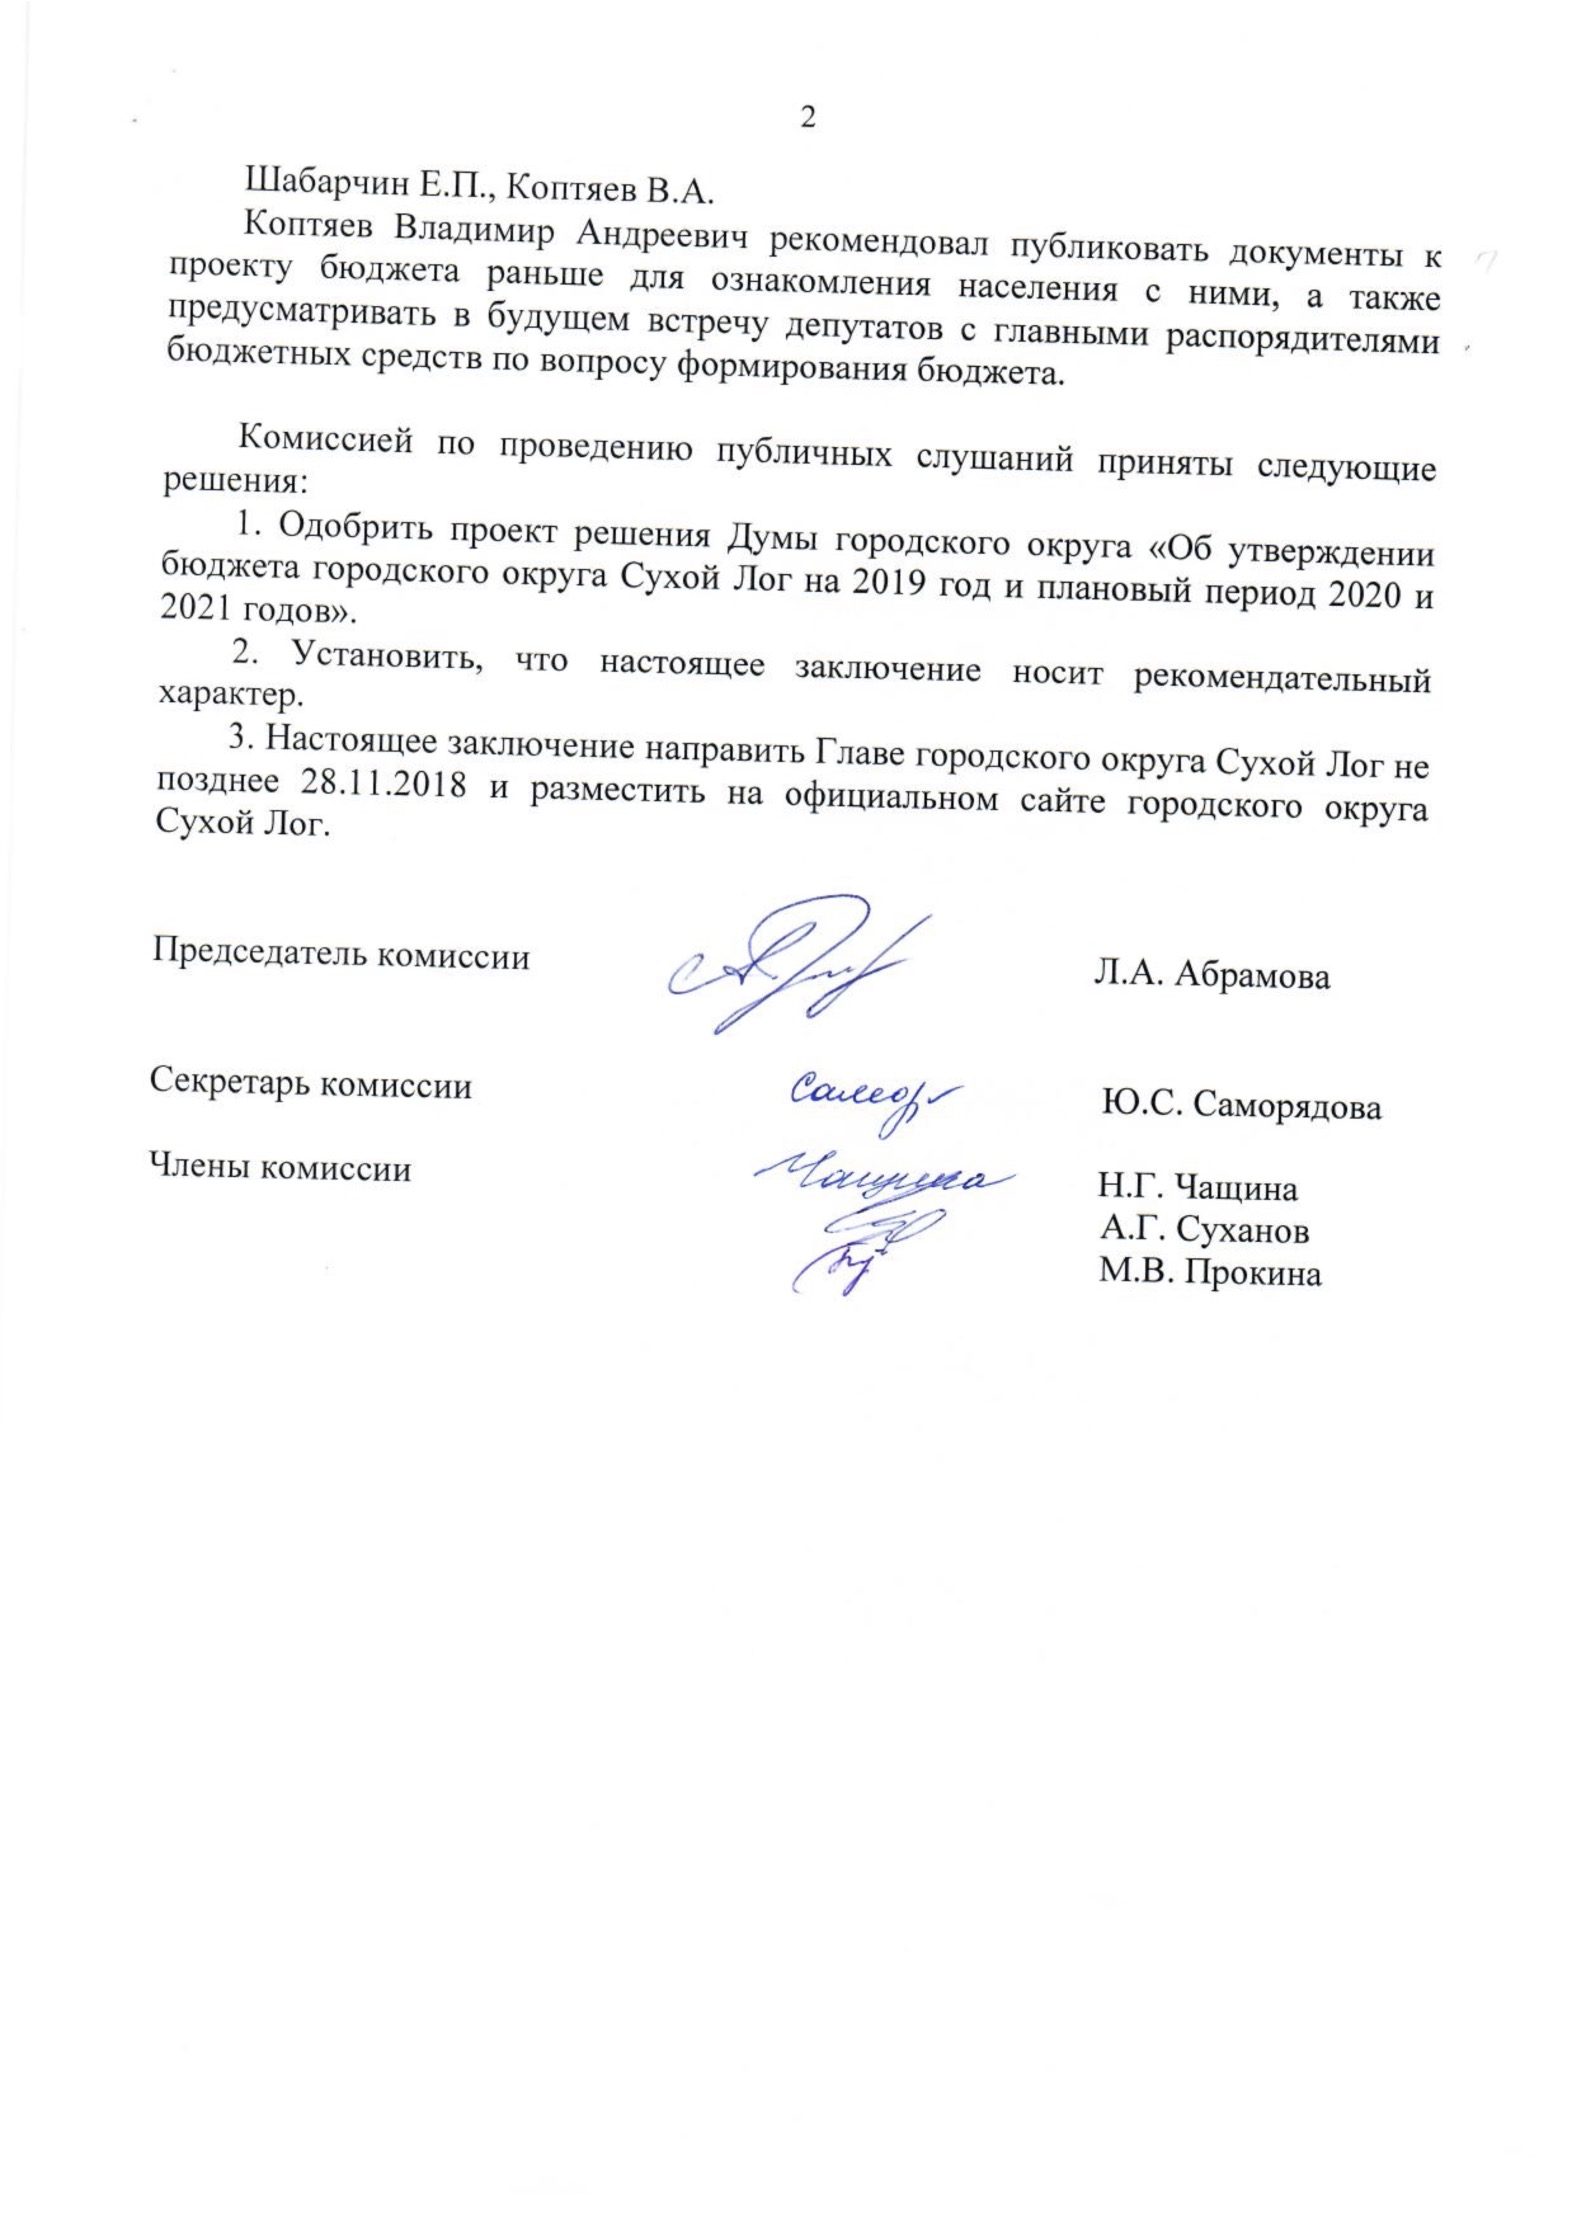 Zaklyuchenie-o-rezultatakh-publichnykh-slushaniy 03.11.2021 в 07.06.33